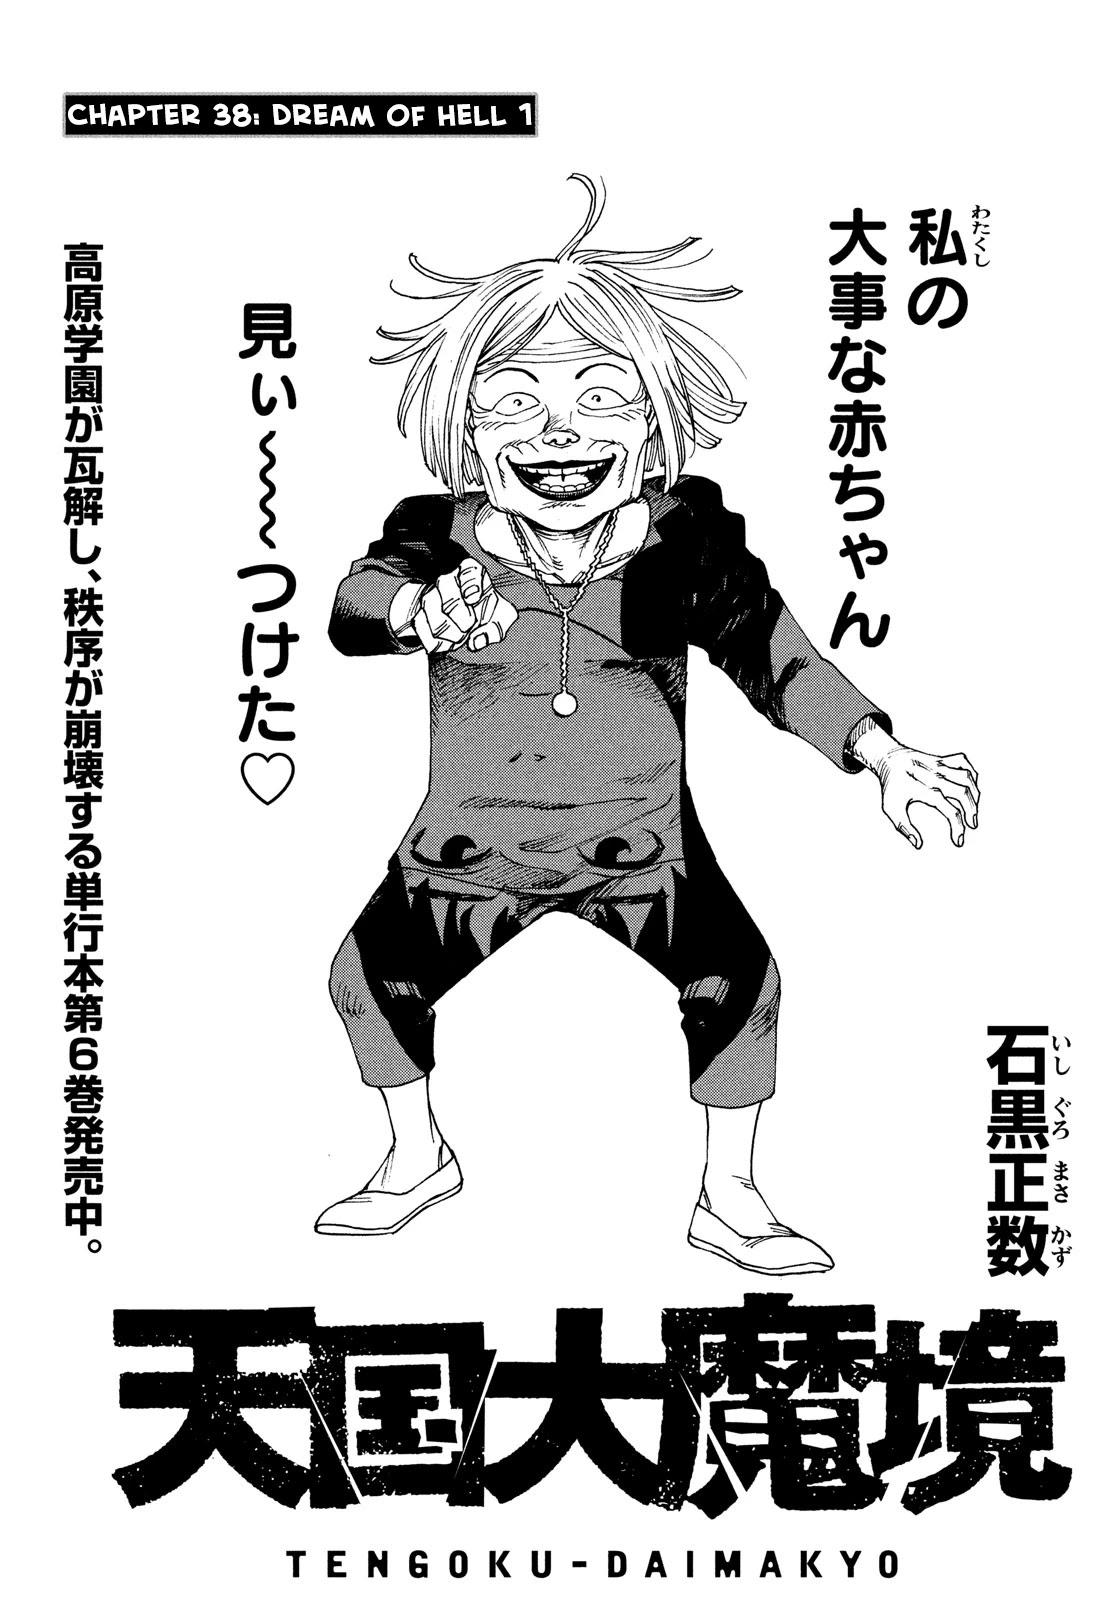 Tengoku Daimakyou Chapter 38: Dream Of Hell ➀ page 3 - Mangakakalot